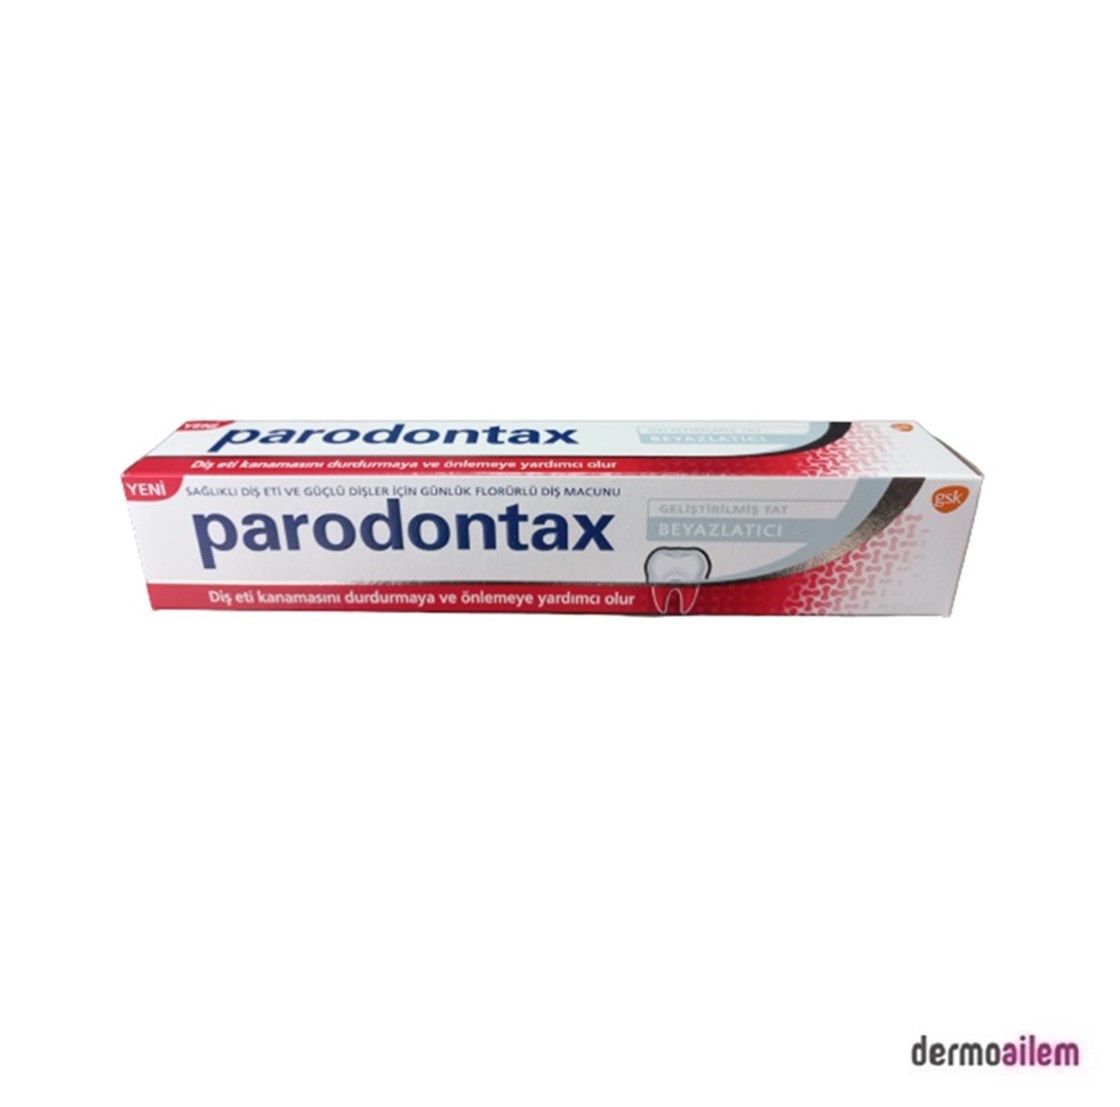 Parodontax Geliştirilmiş Tat Beyazlatıcı Diş Macunu 75 ml Fiyatları  İndirimli | Dermoailem.com